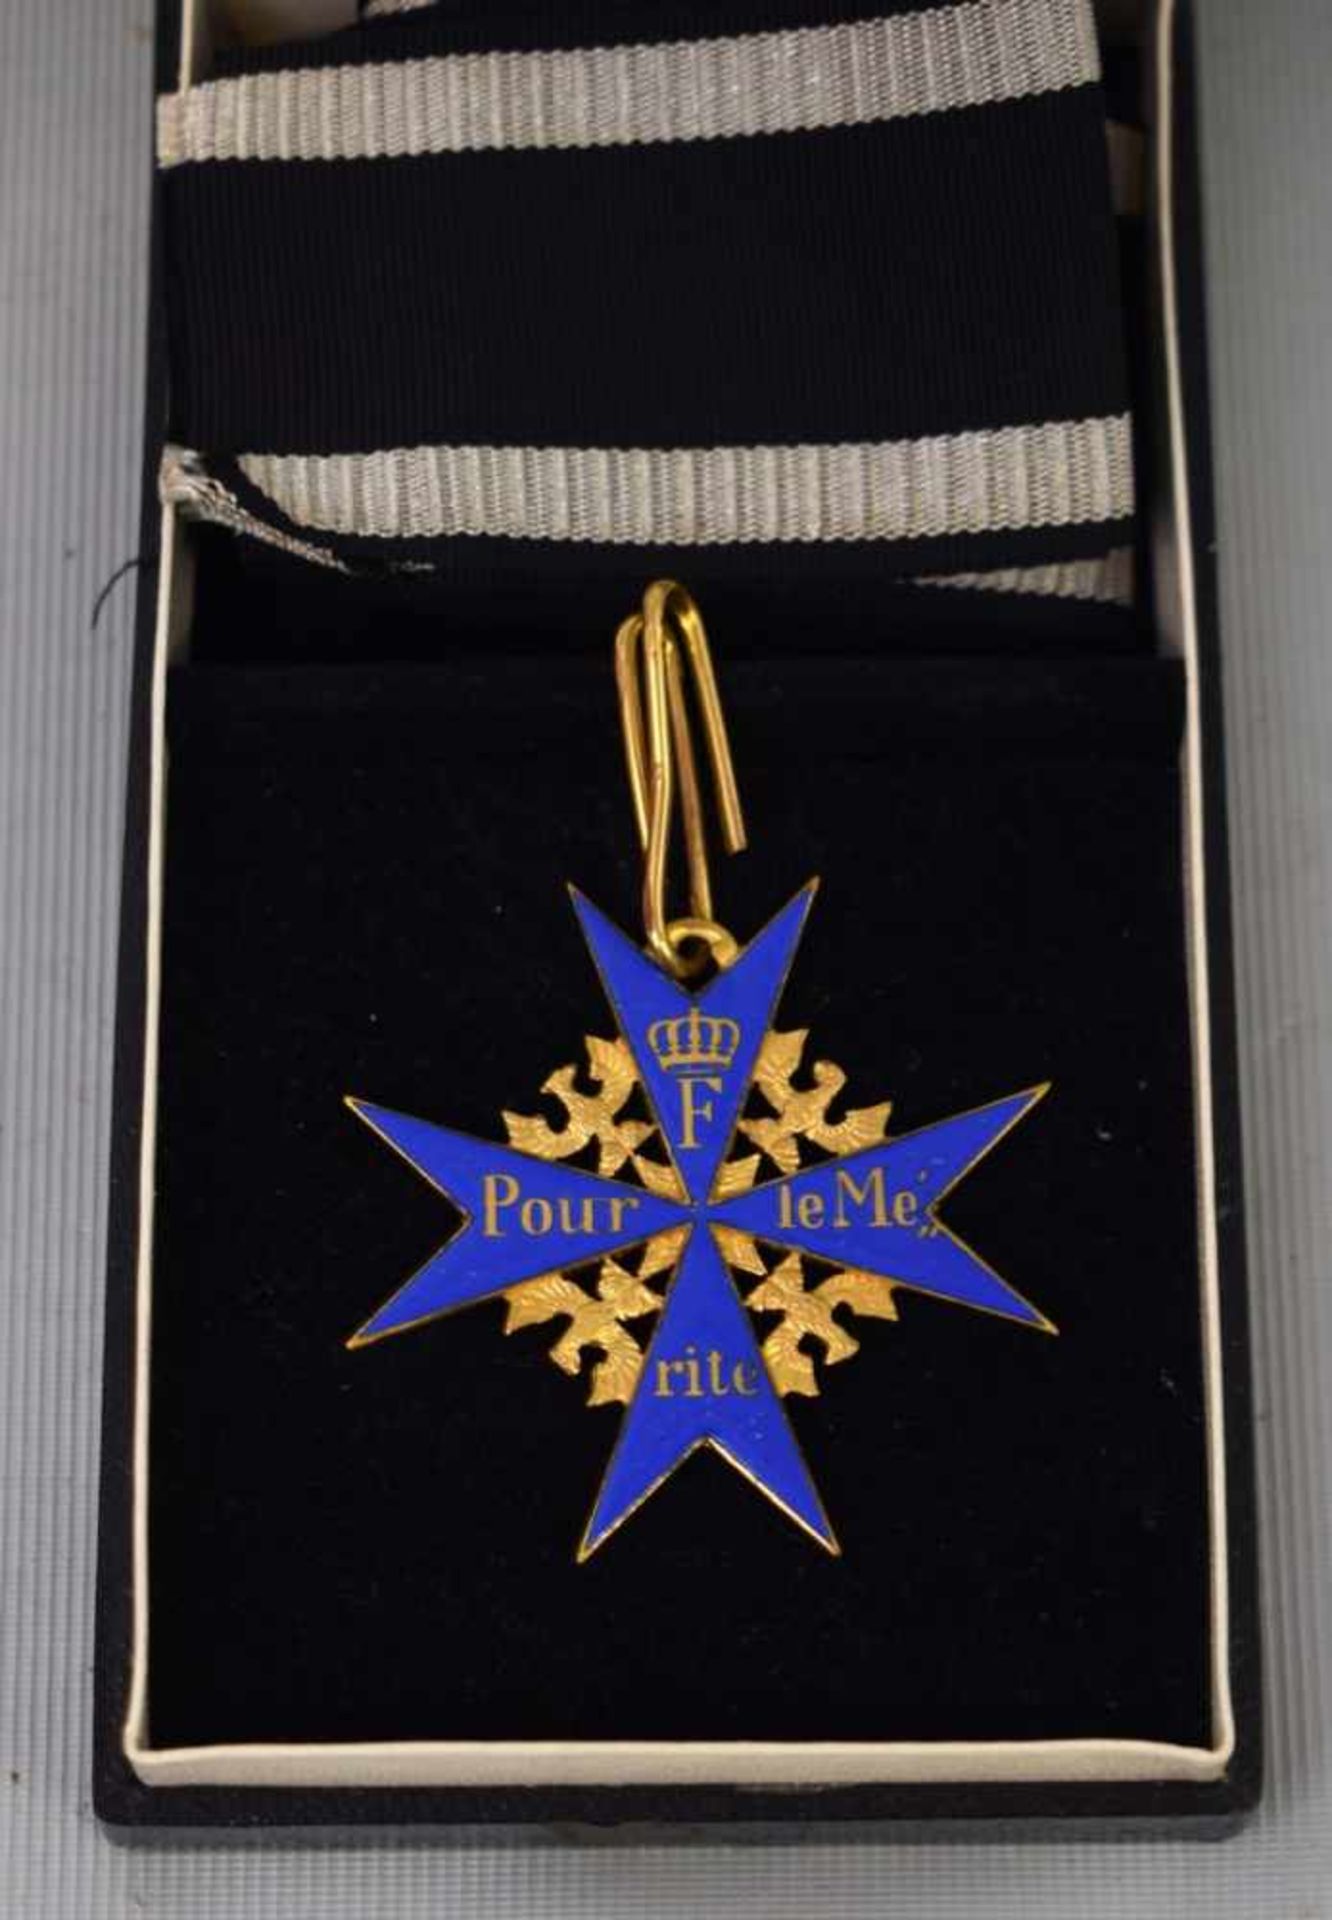 Pour le Merite Ordenfür Militärverdienste, Krone, goldfarben und blau emailliert, mit Band, im